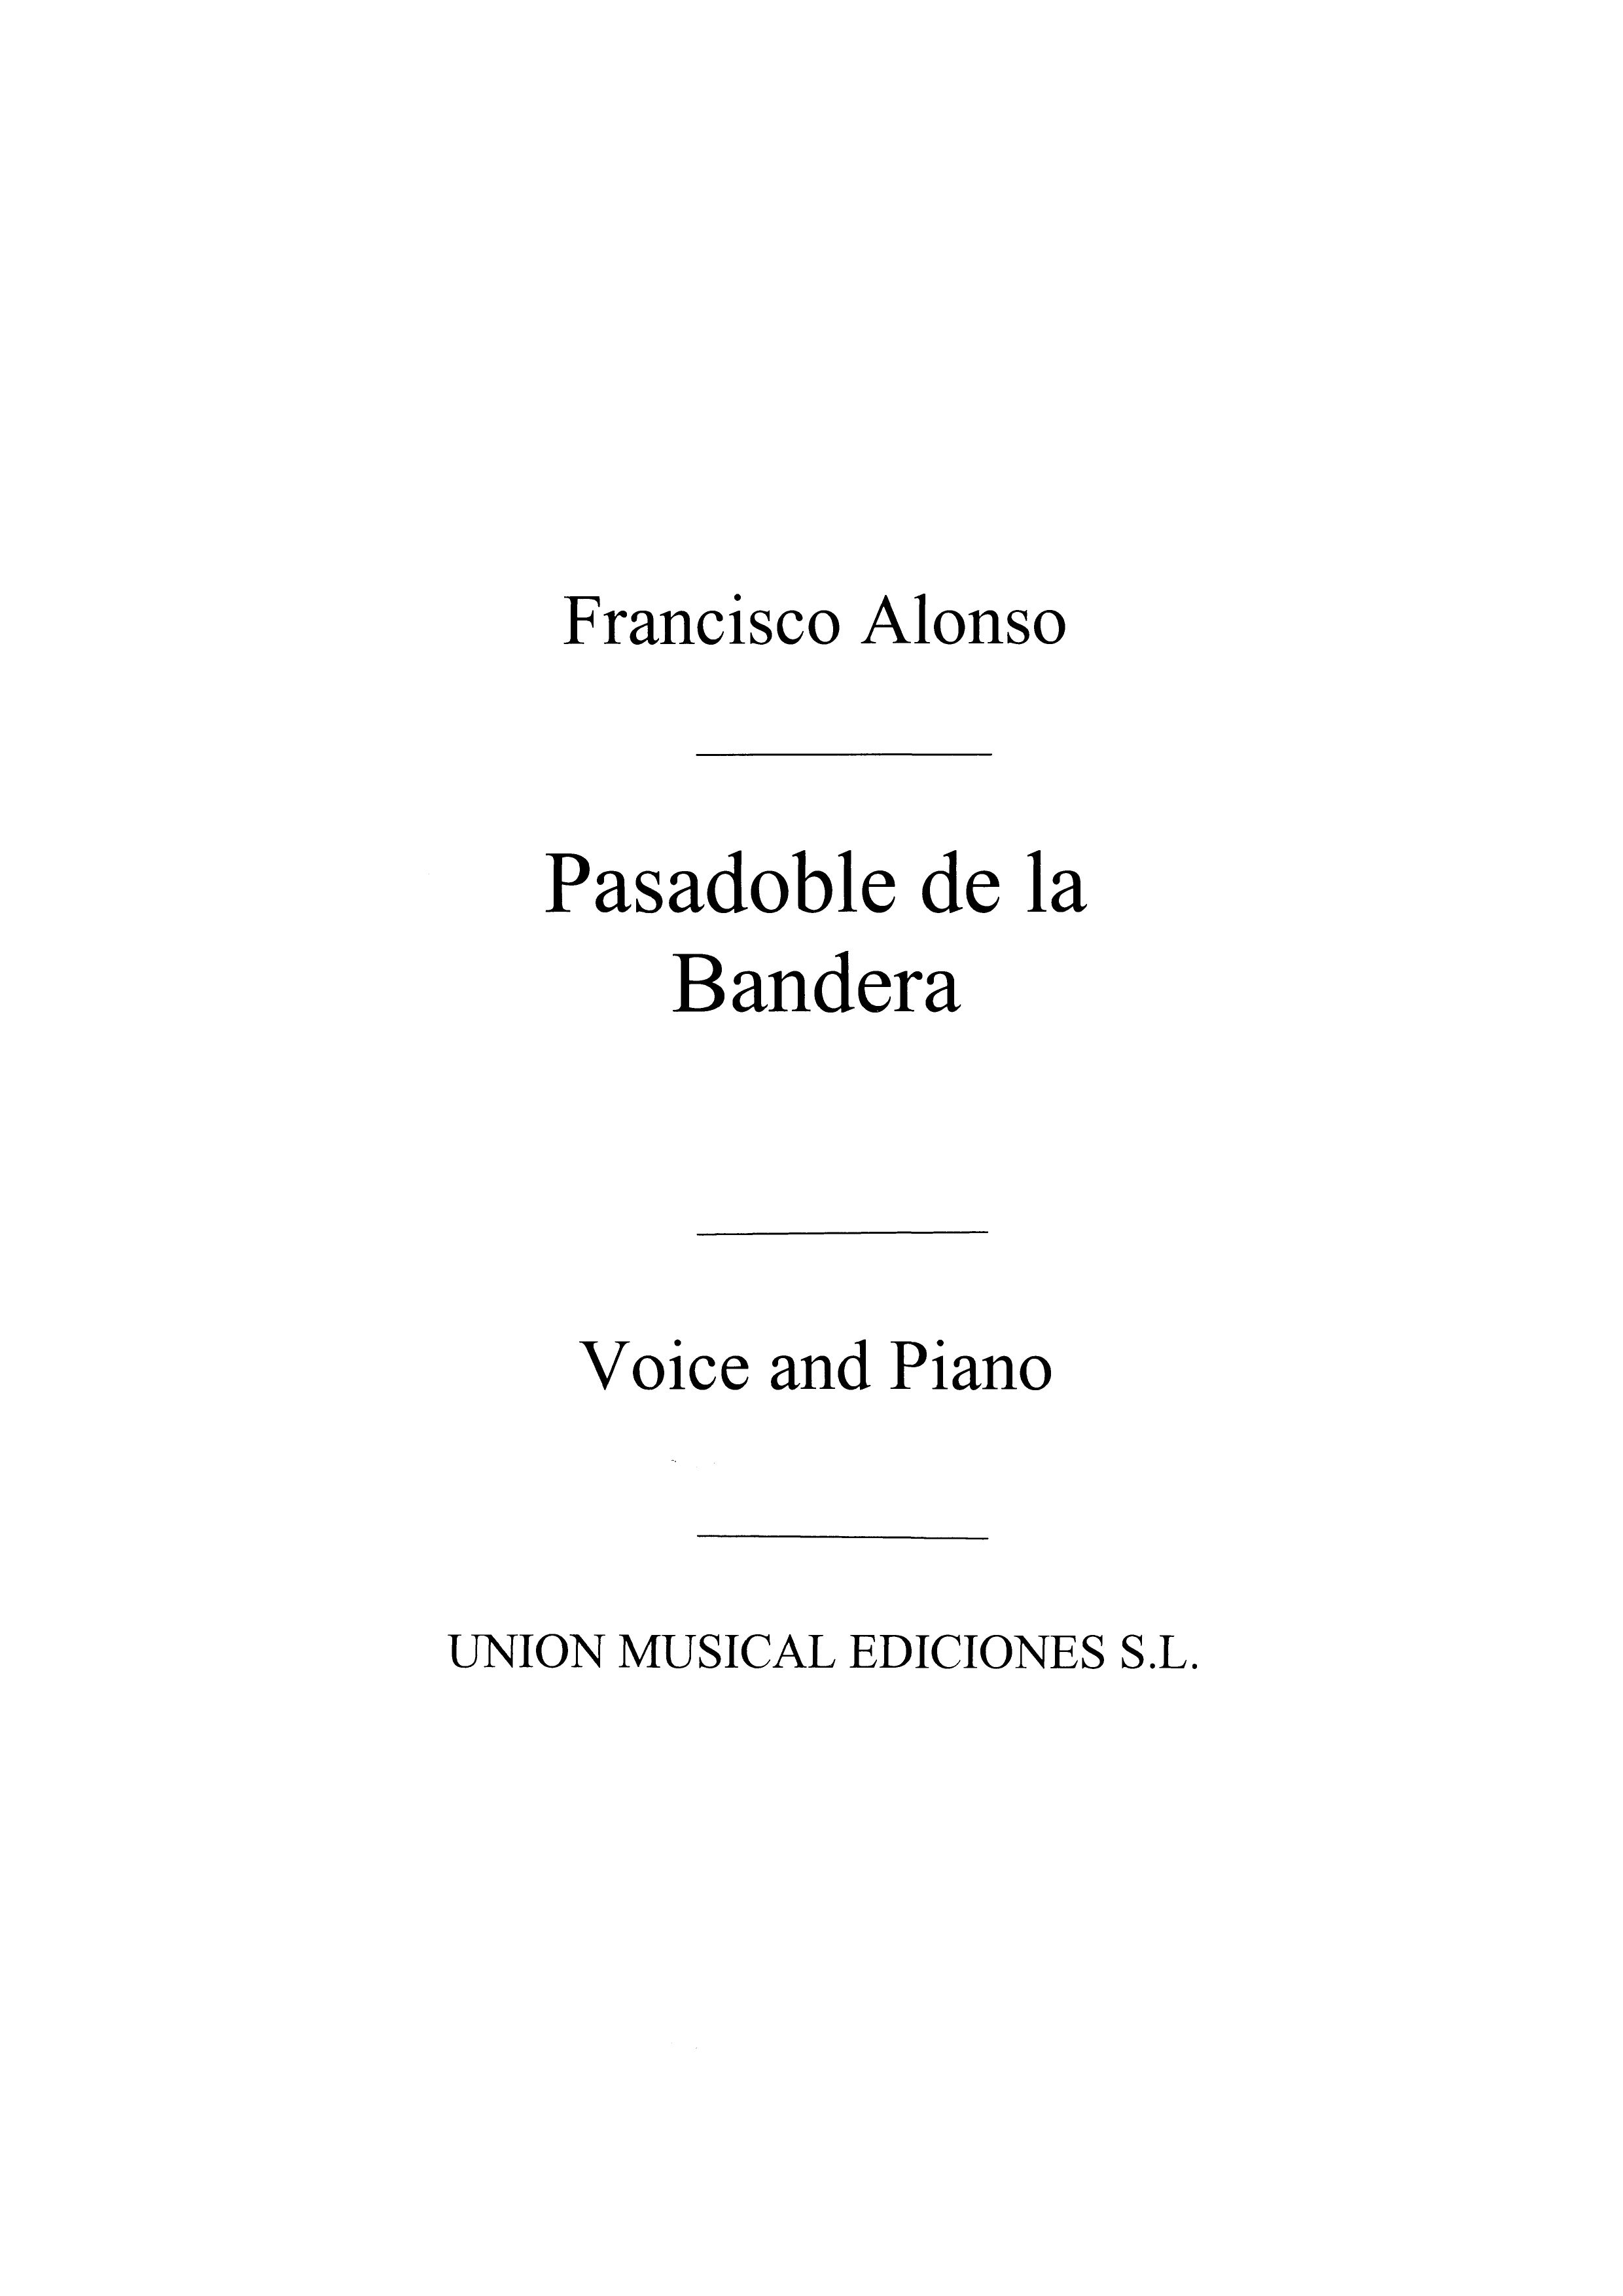 Francisco Alonso: Pasodoble De La Bandera No.5 From Las Corsarias: Voice: Vocal